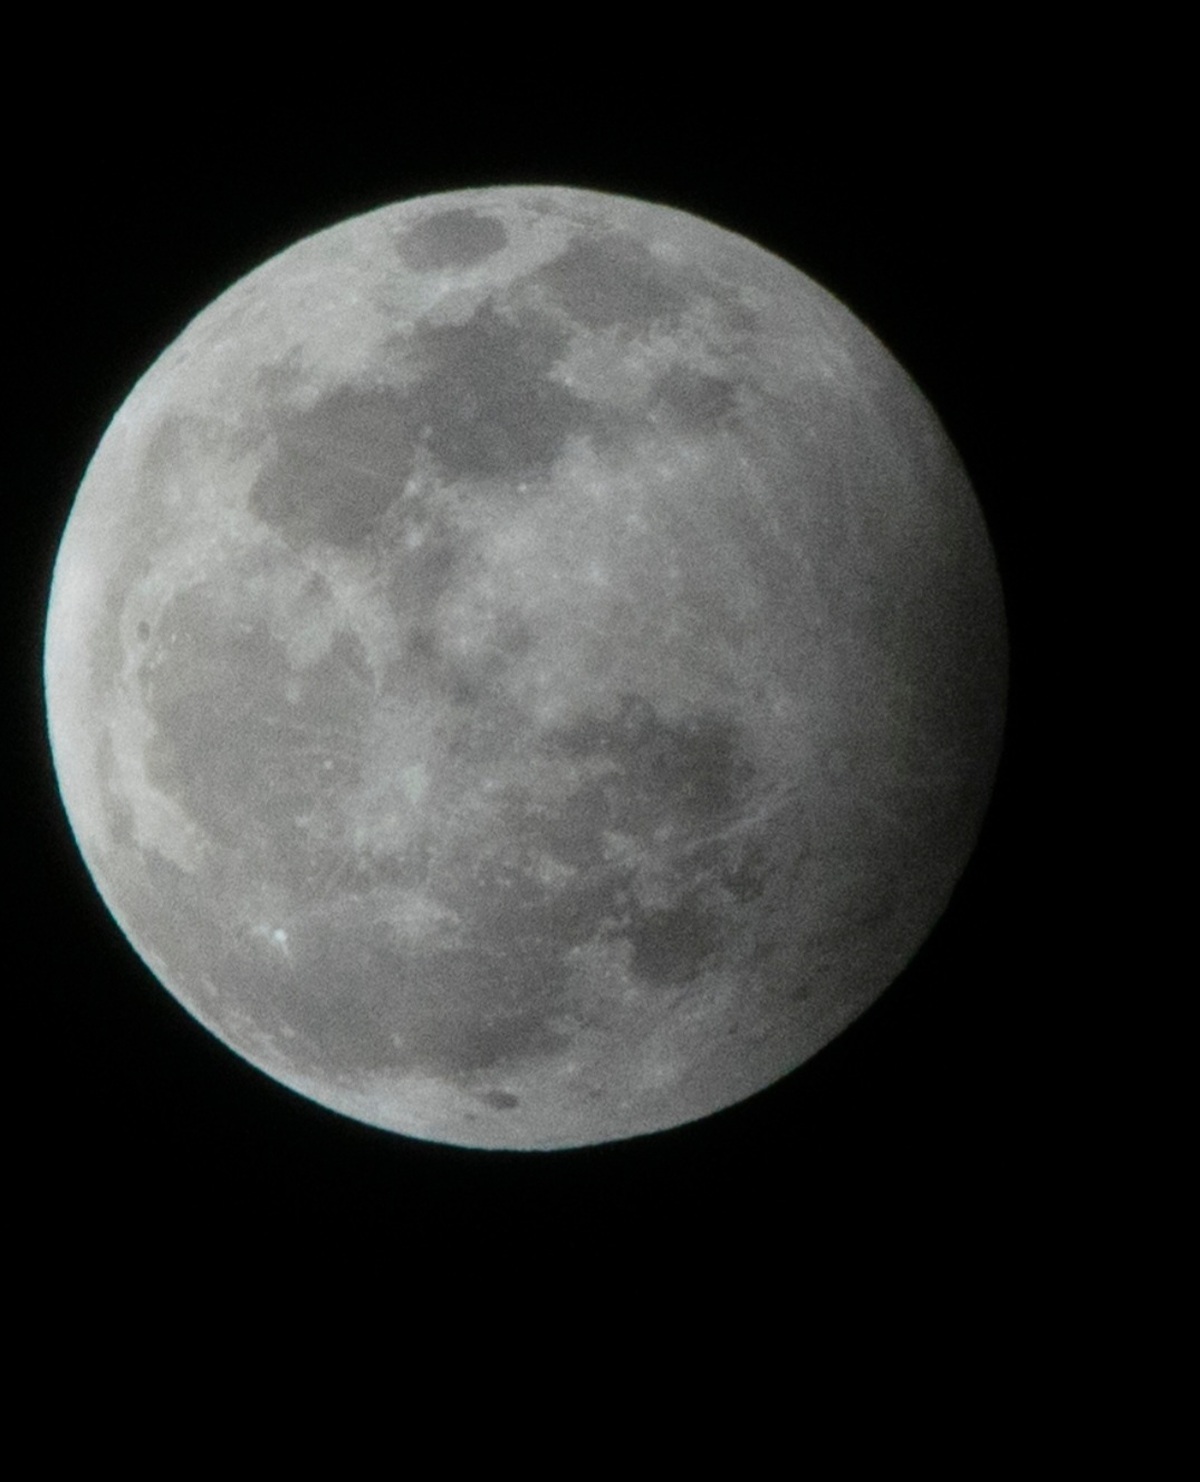 شامگاه امشب ماه گرفتگی نیم سایه ای رخ می دهد  فرصت رصد ۴ ساعته گرفت ماه